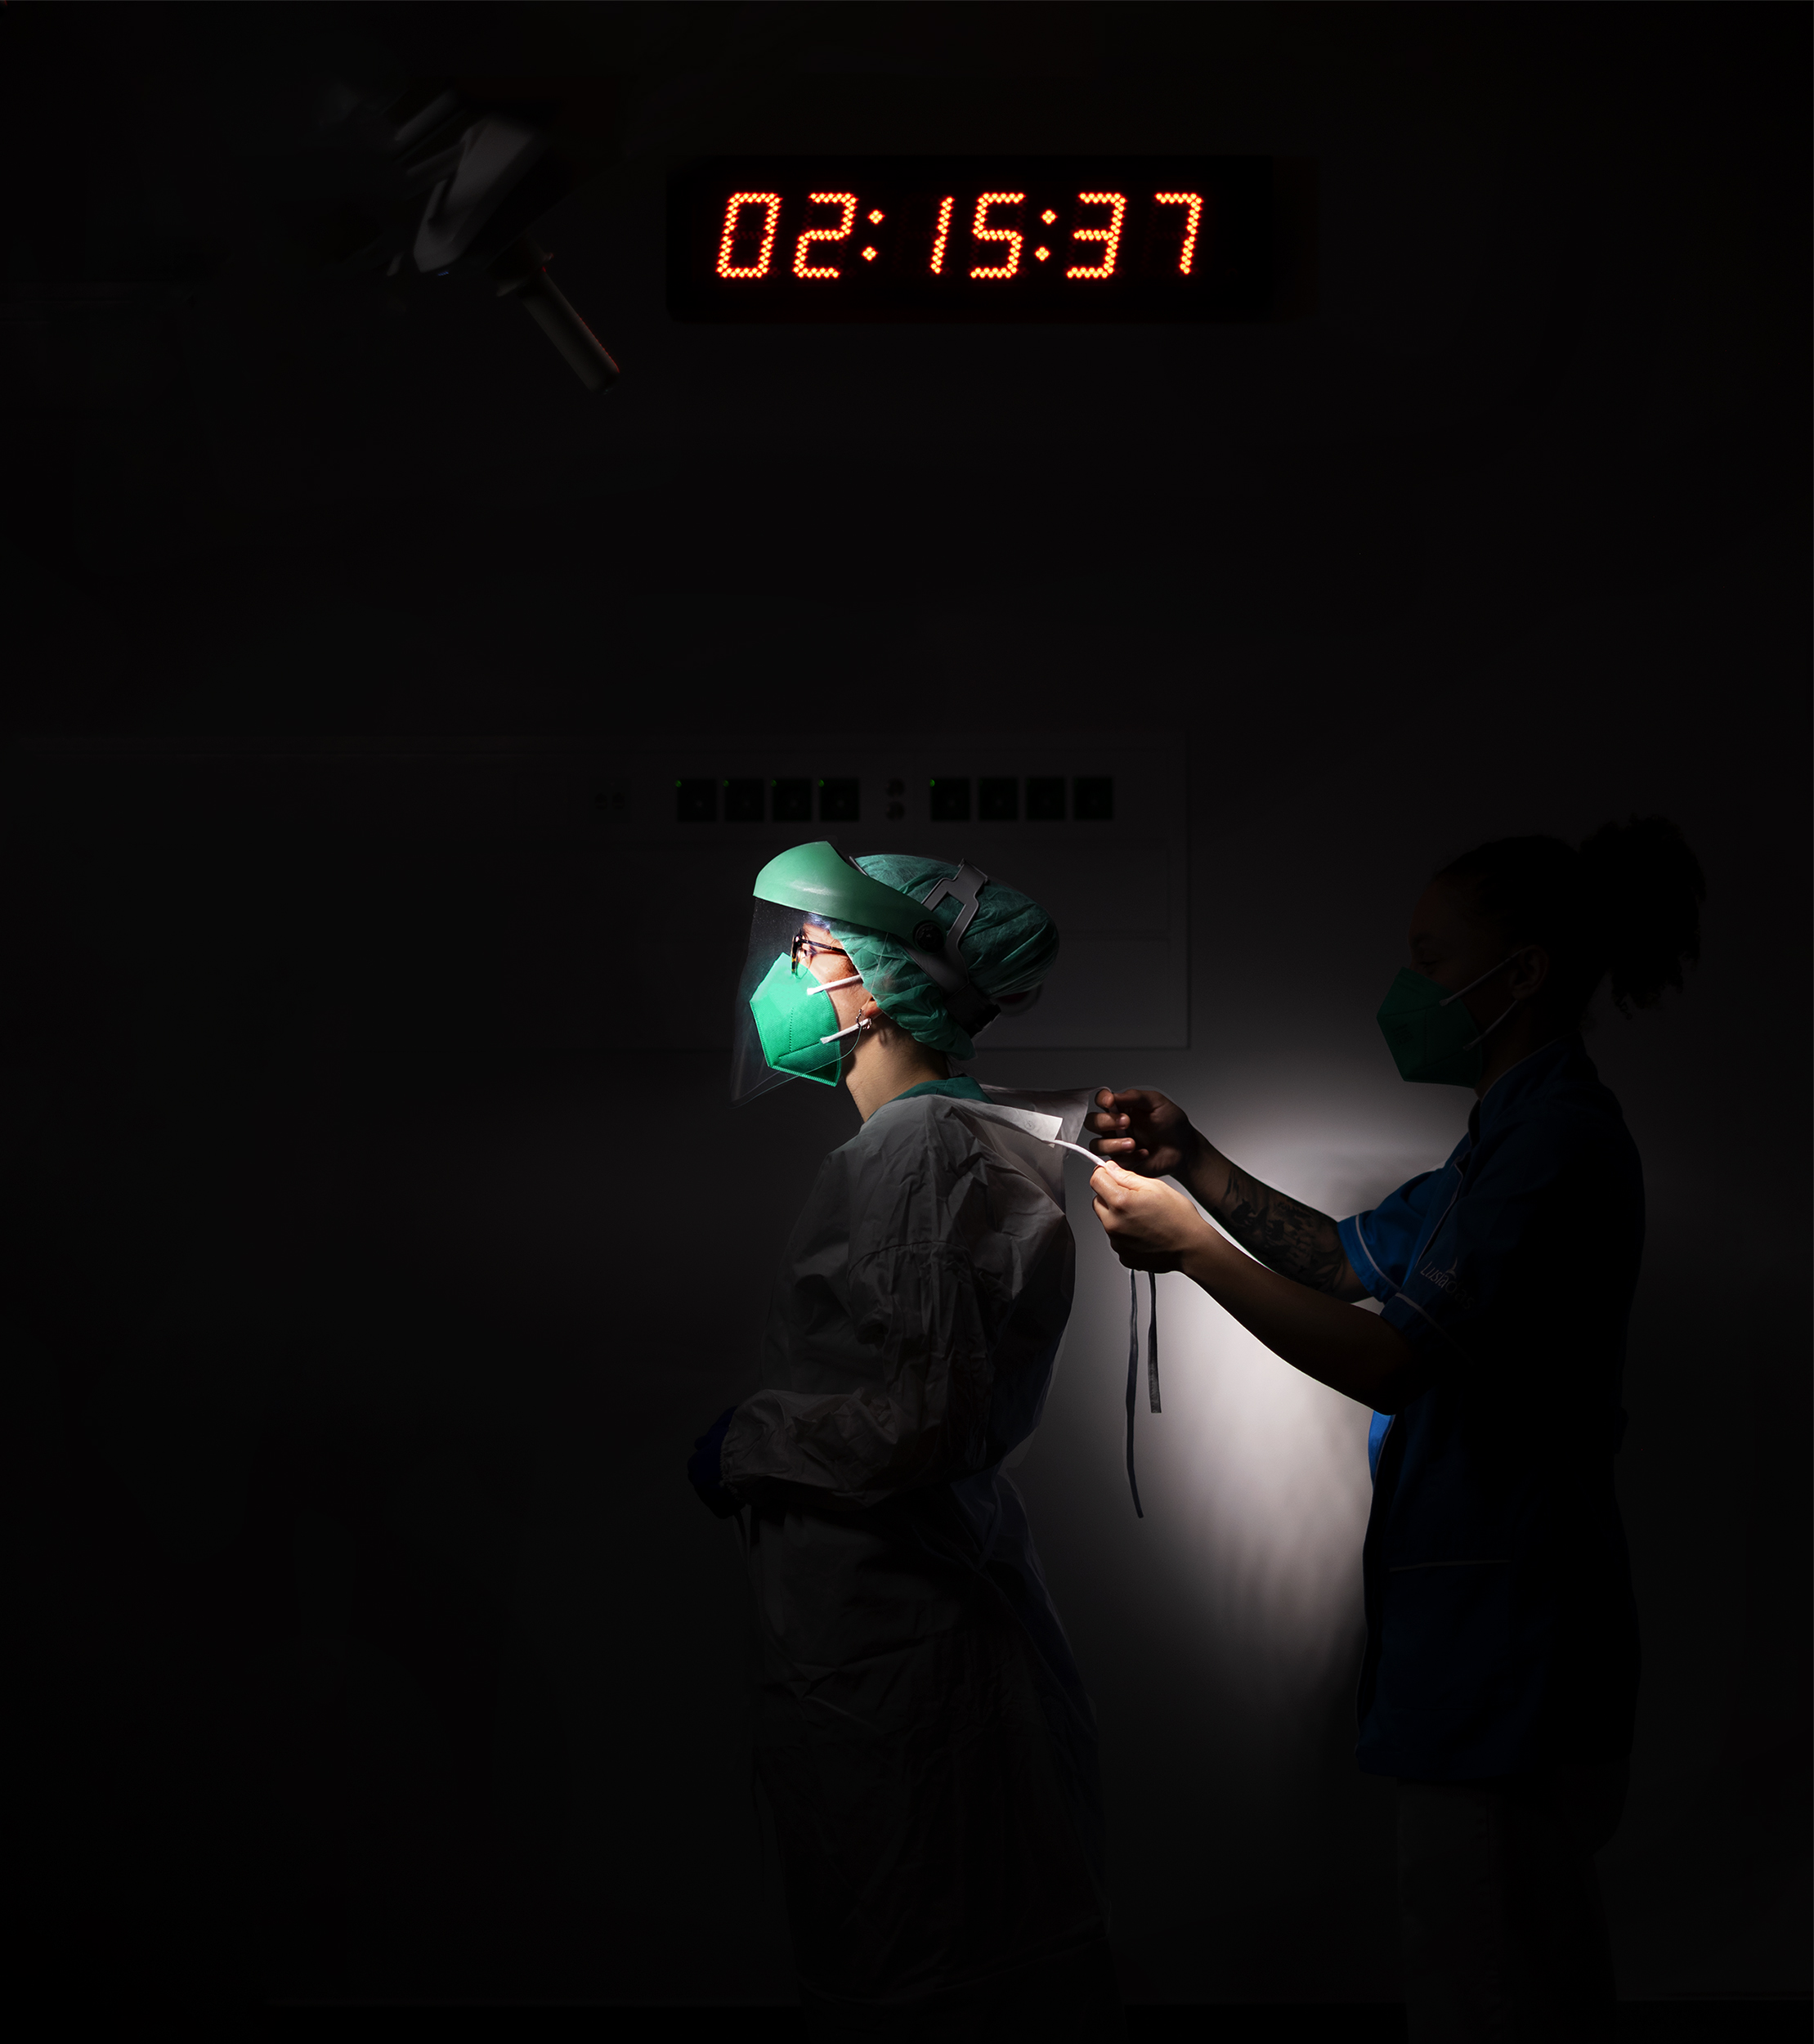 Enfermeira de perfil em ambiente escuro ajudada por outra enfermeira a colocar equipamento de proteção individual.